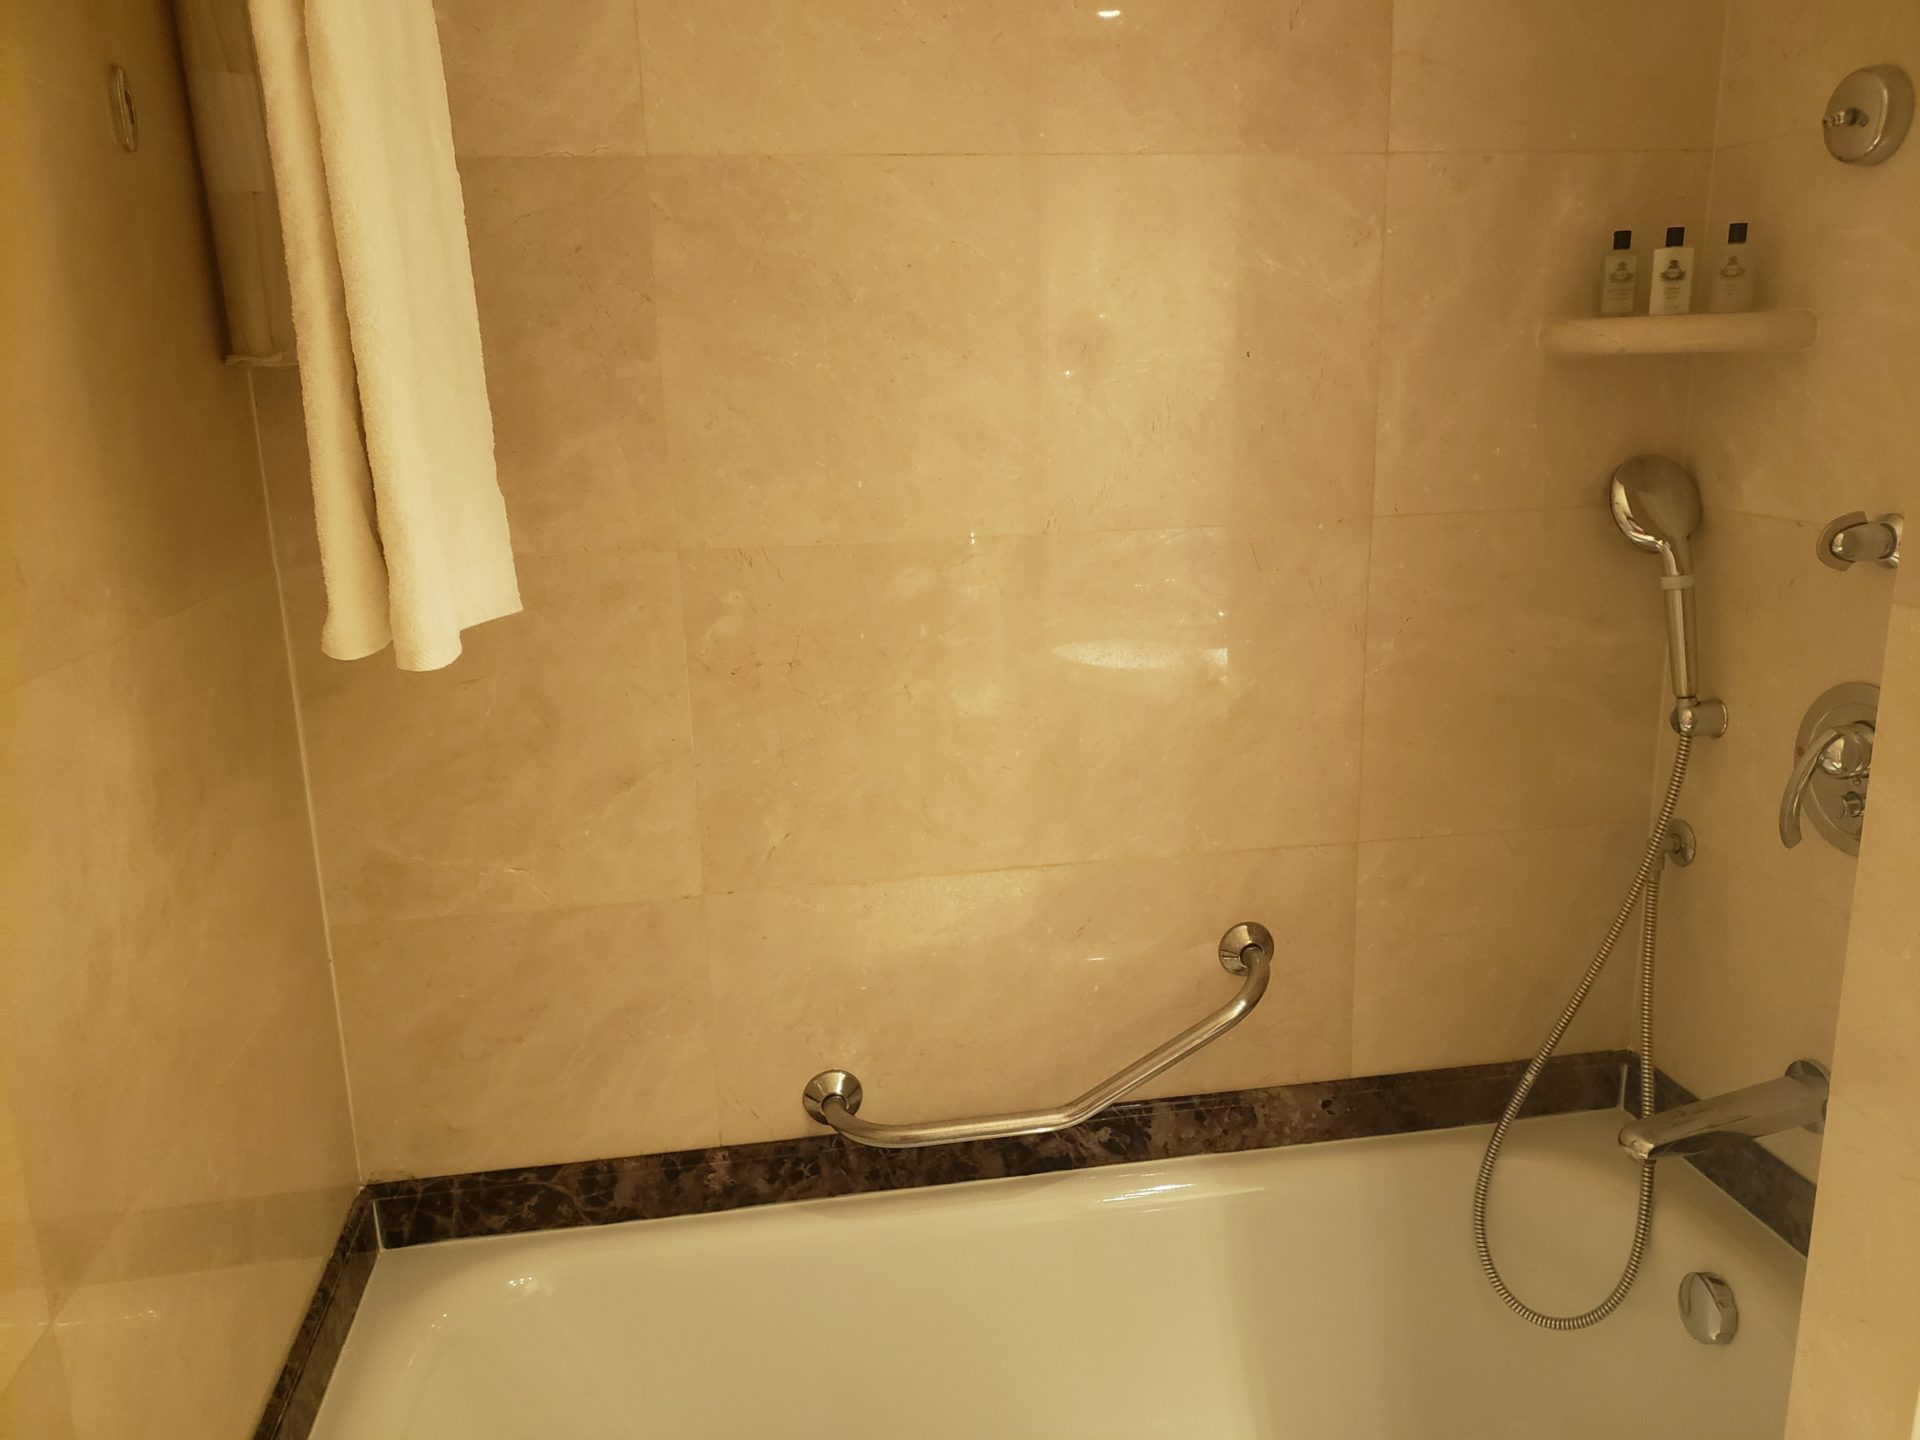 a bathtub and shower in a bathroom